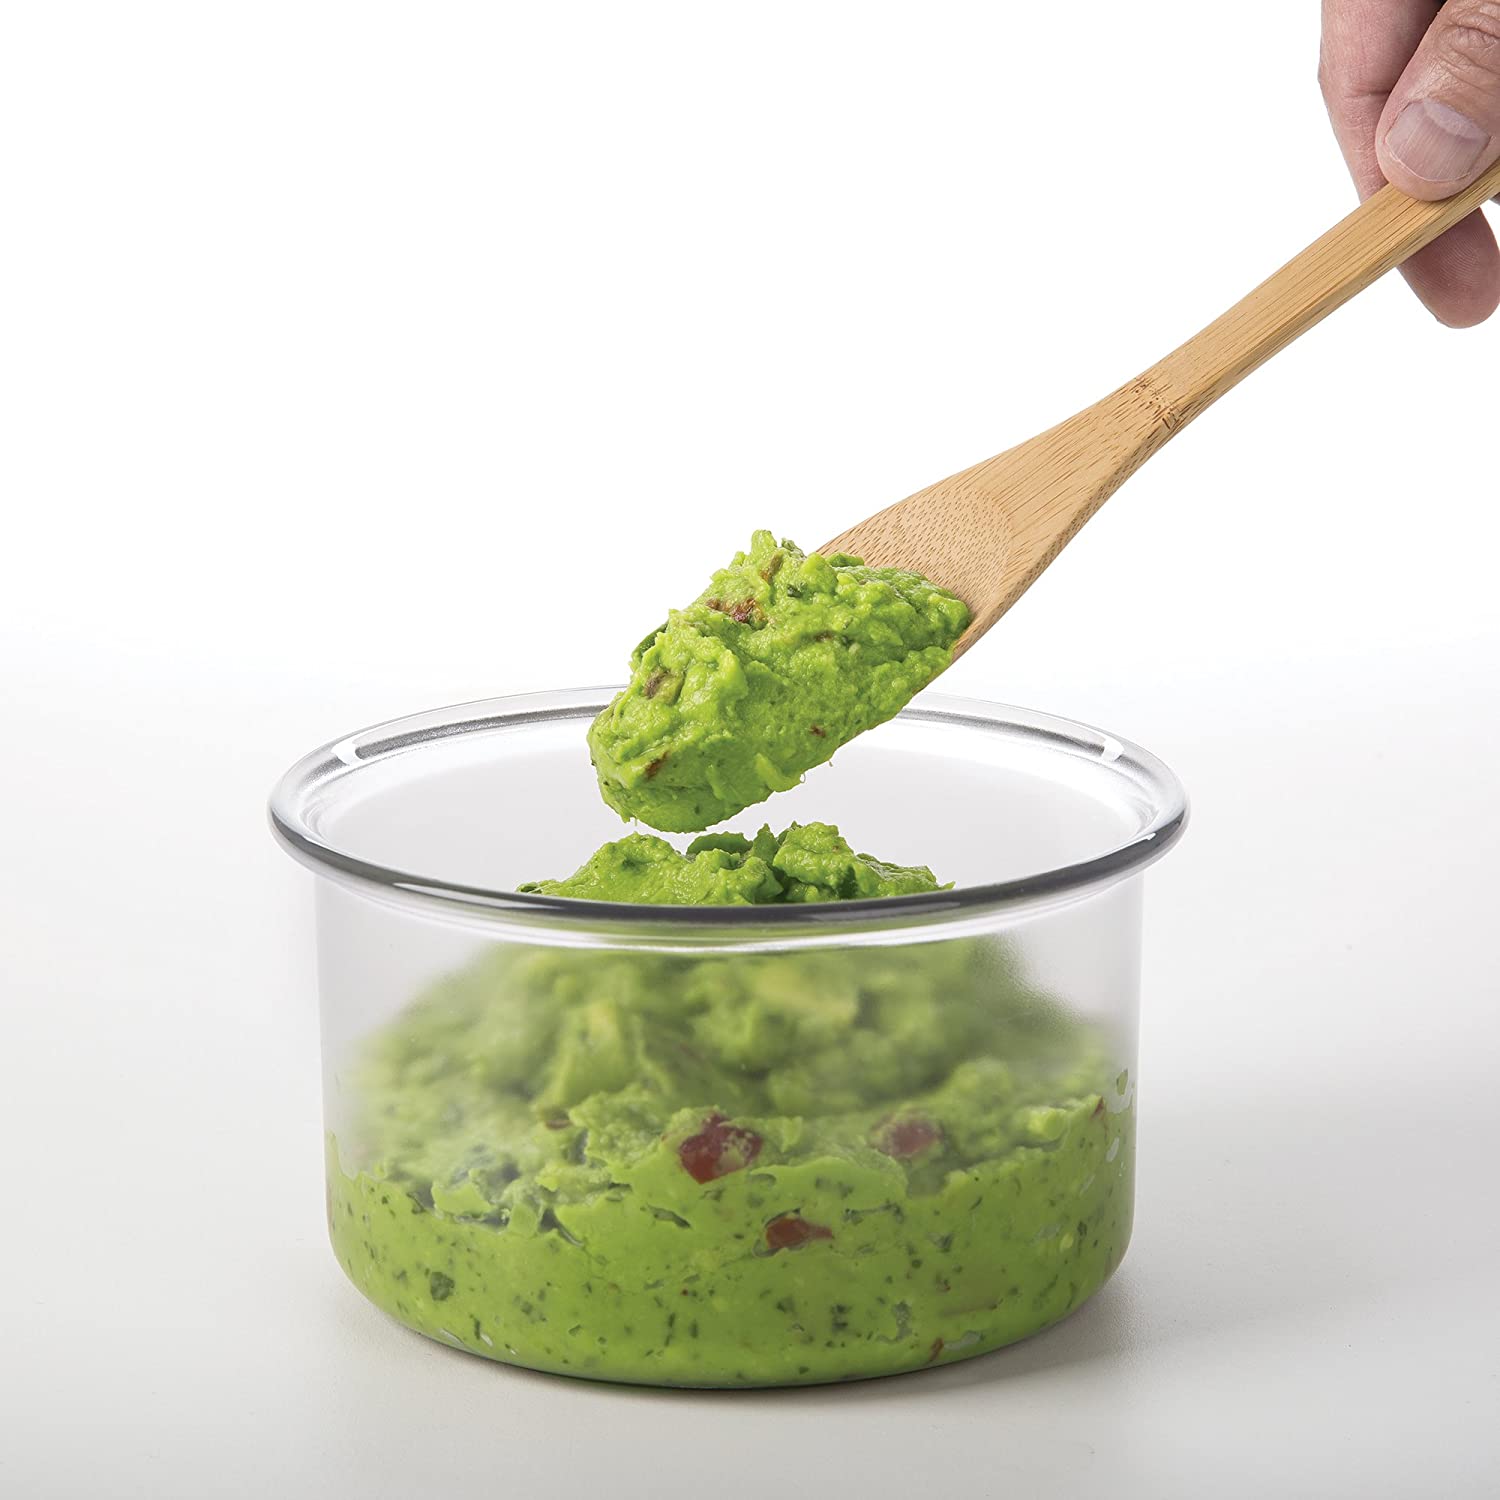 Progressive Lettuce Keeper - Spoons N Spice